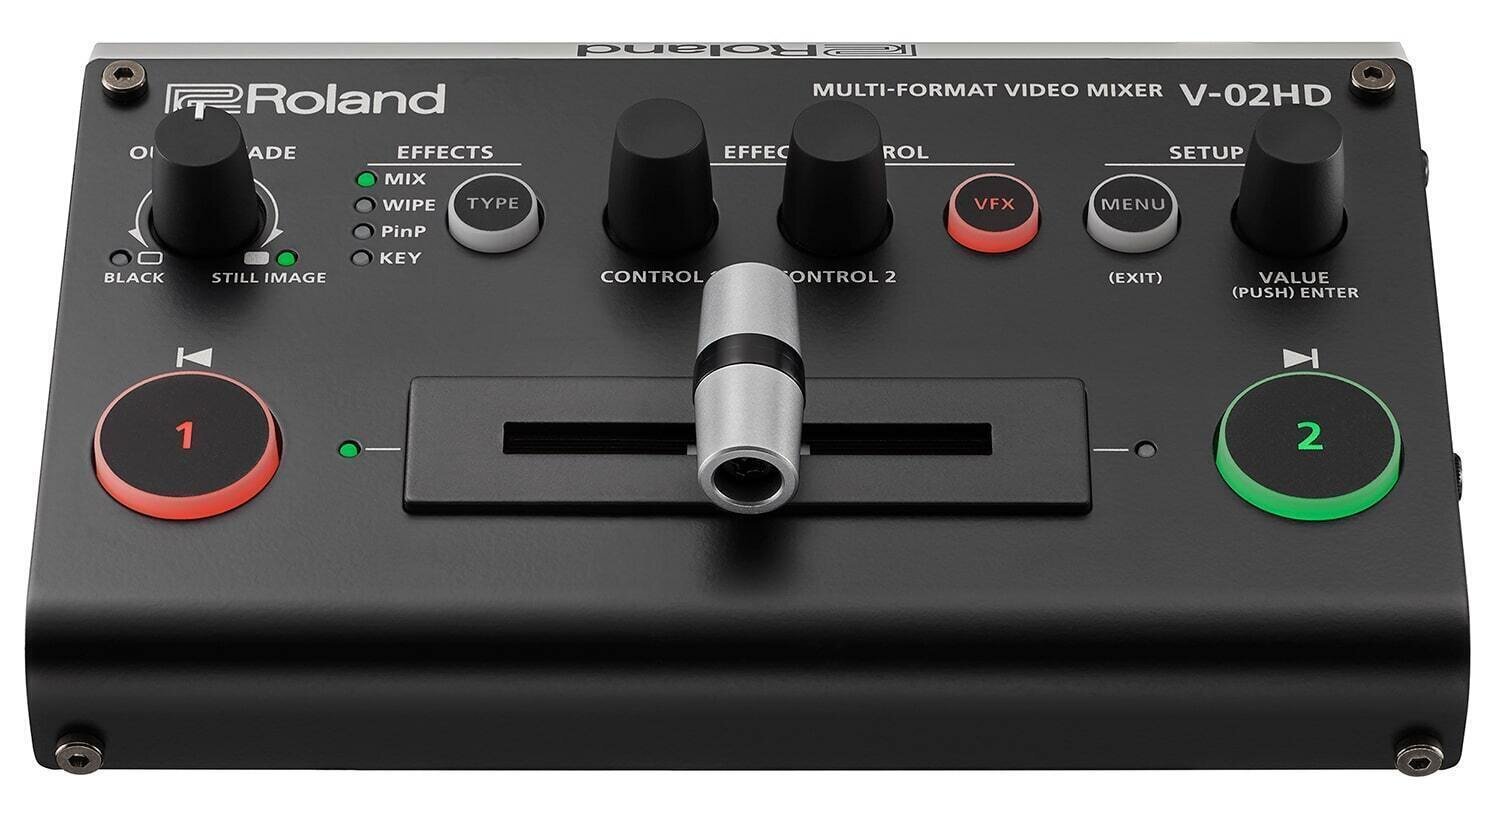 Consola de mixare video Roland V-02HD